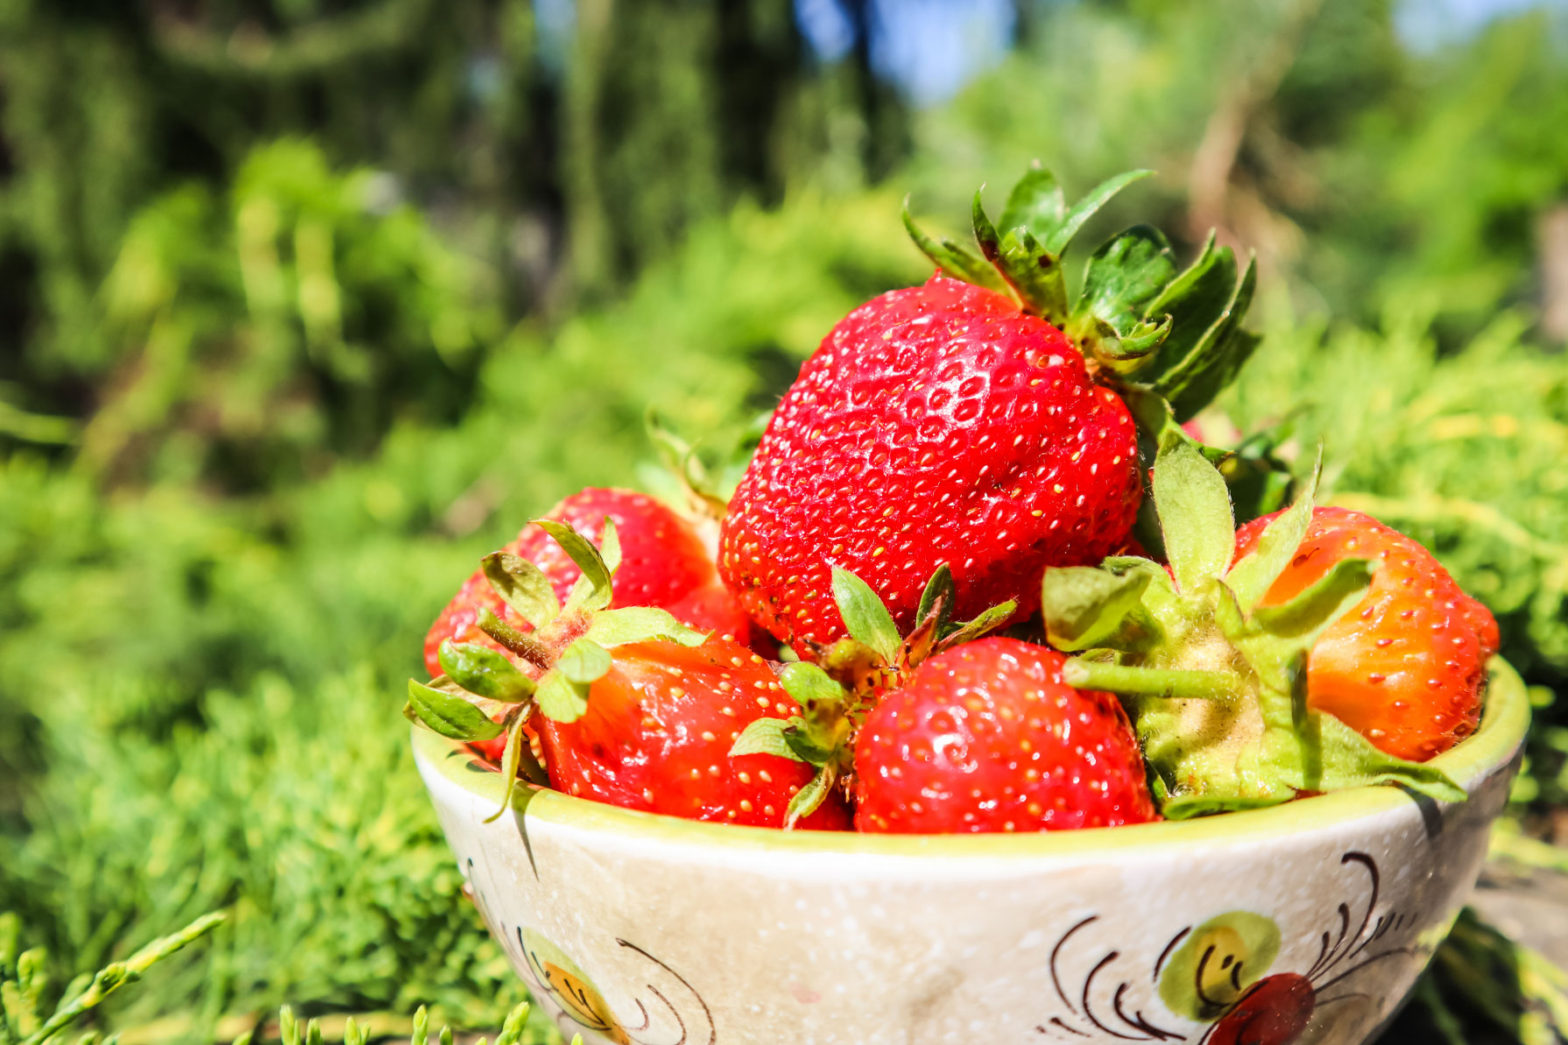 Jordbruksverket kollar jordgubbarnas ursprung